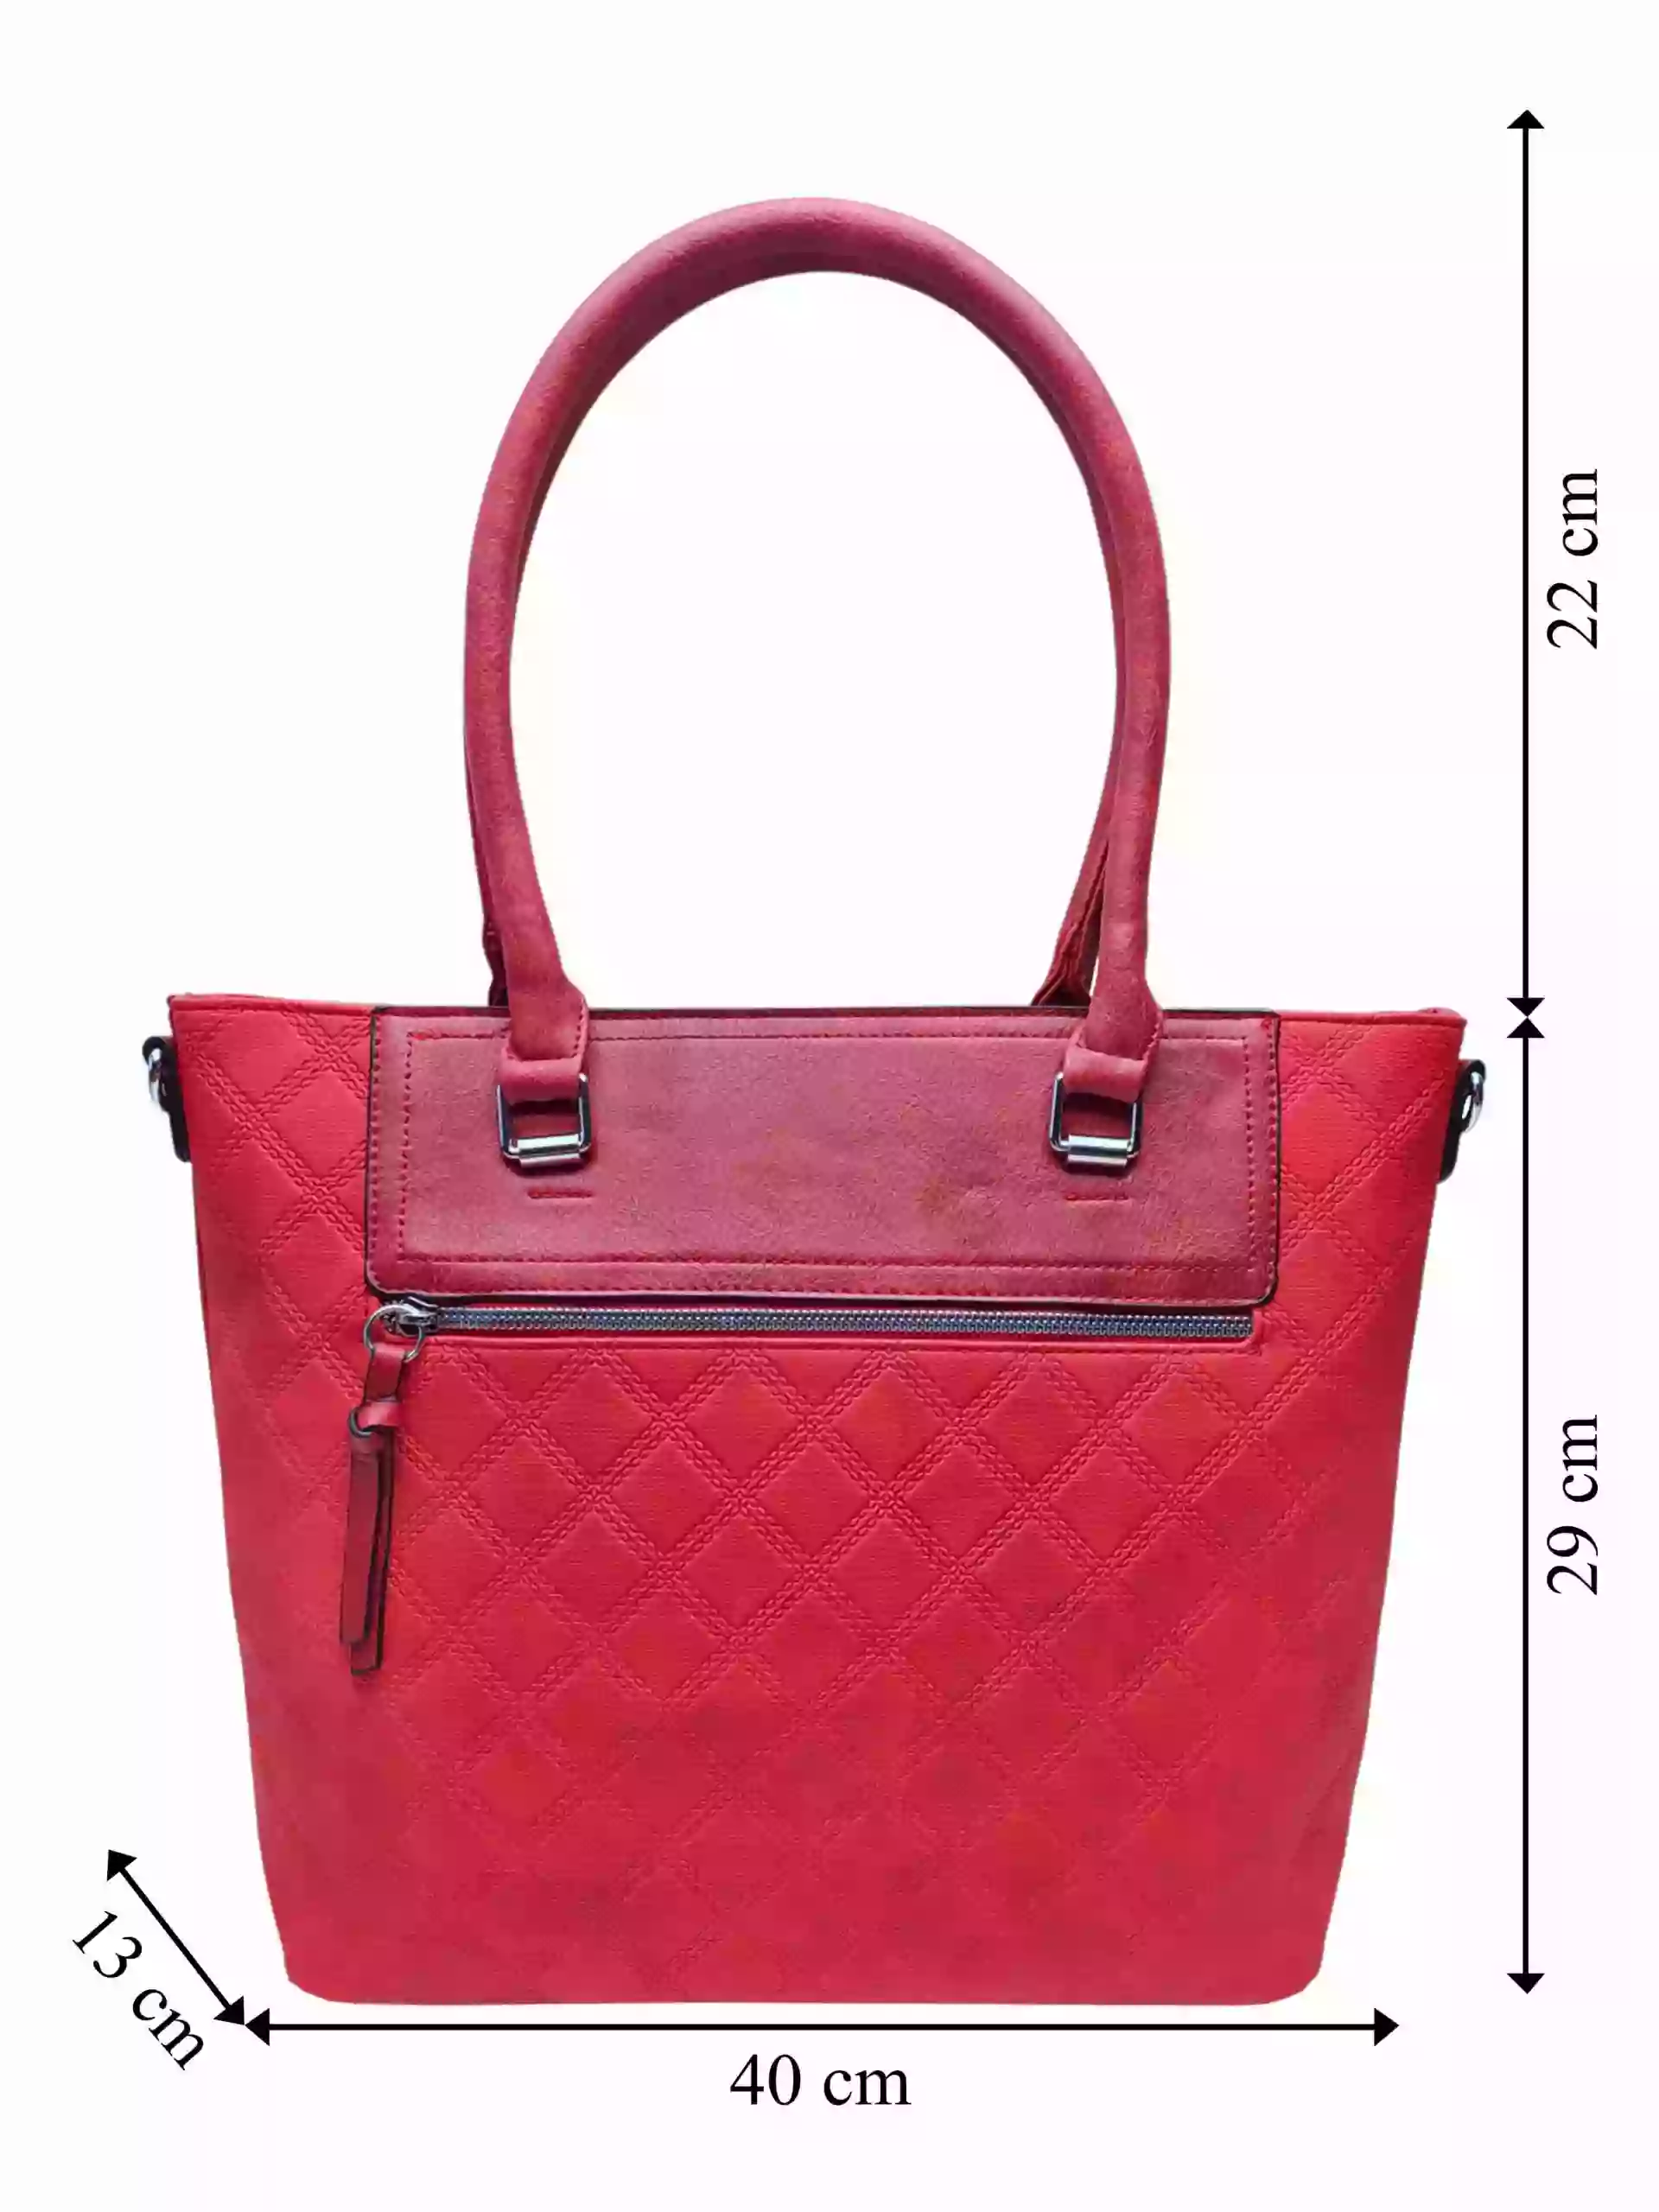 Červená kabelka s kosočtvercovým vzorem, Tapple, H190014, přední strana kabelky do ruky s rozměry